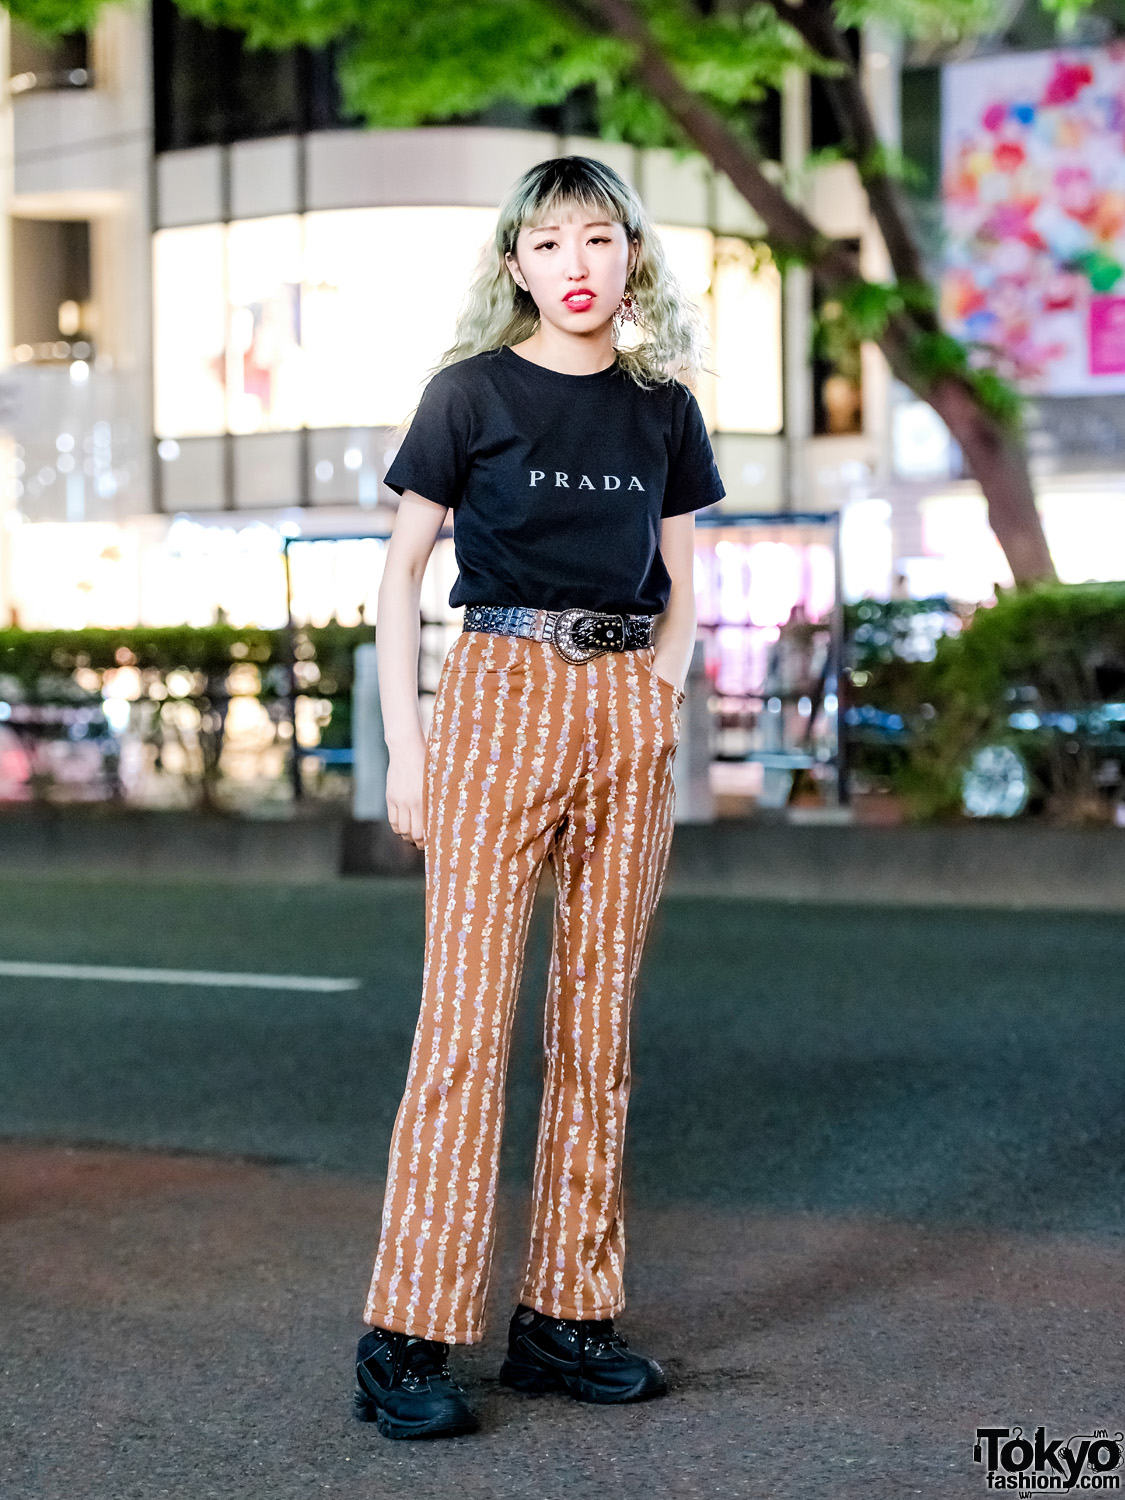 Tokyo Vintage Street Style w/ Prada Top, Tan Print Pants & Black Sneakers